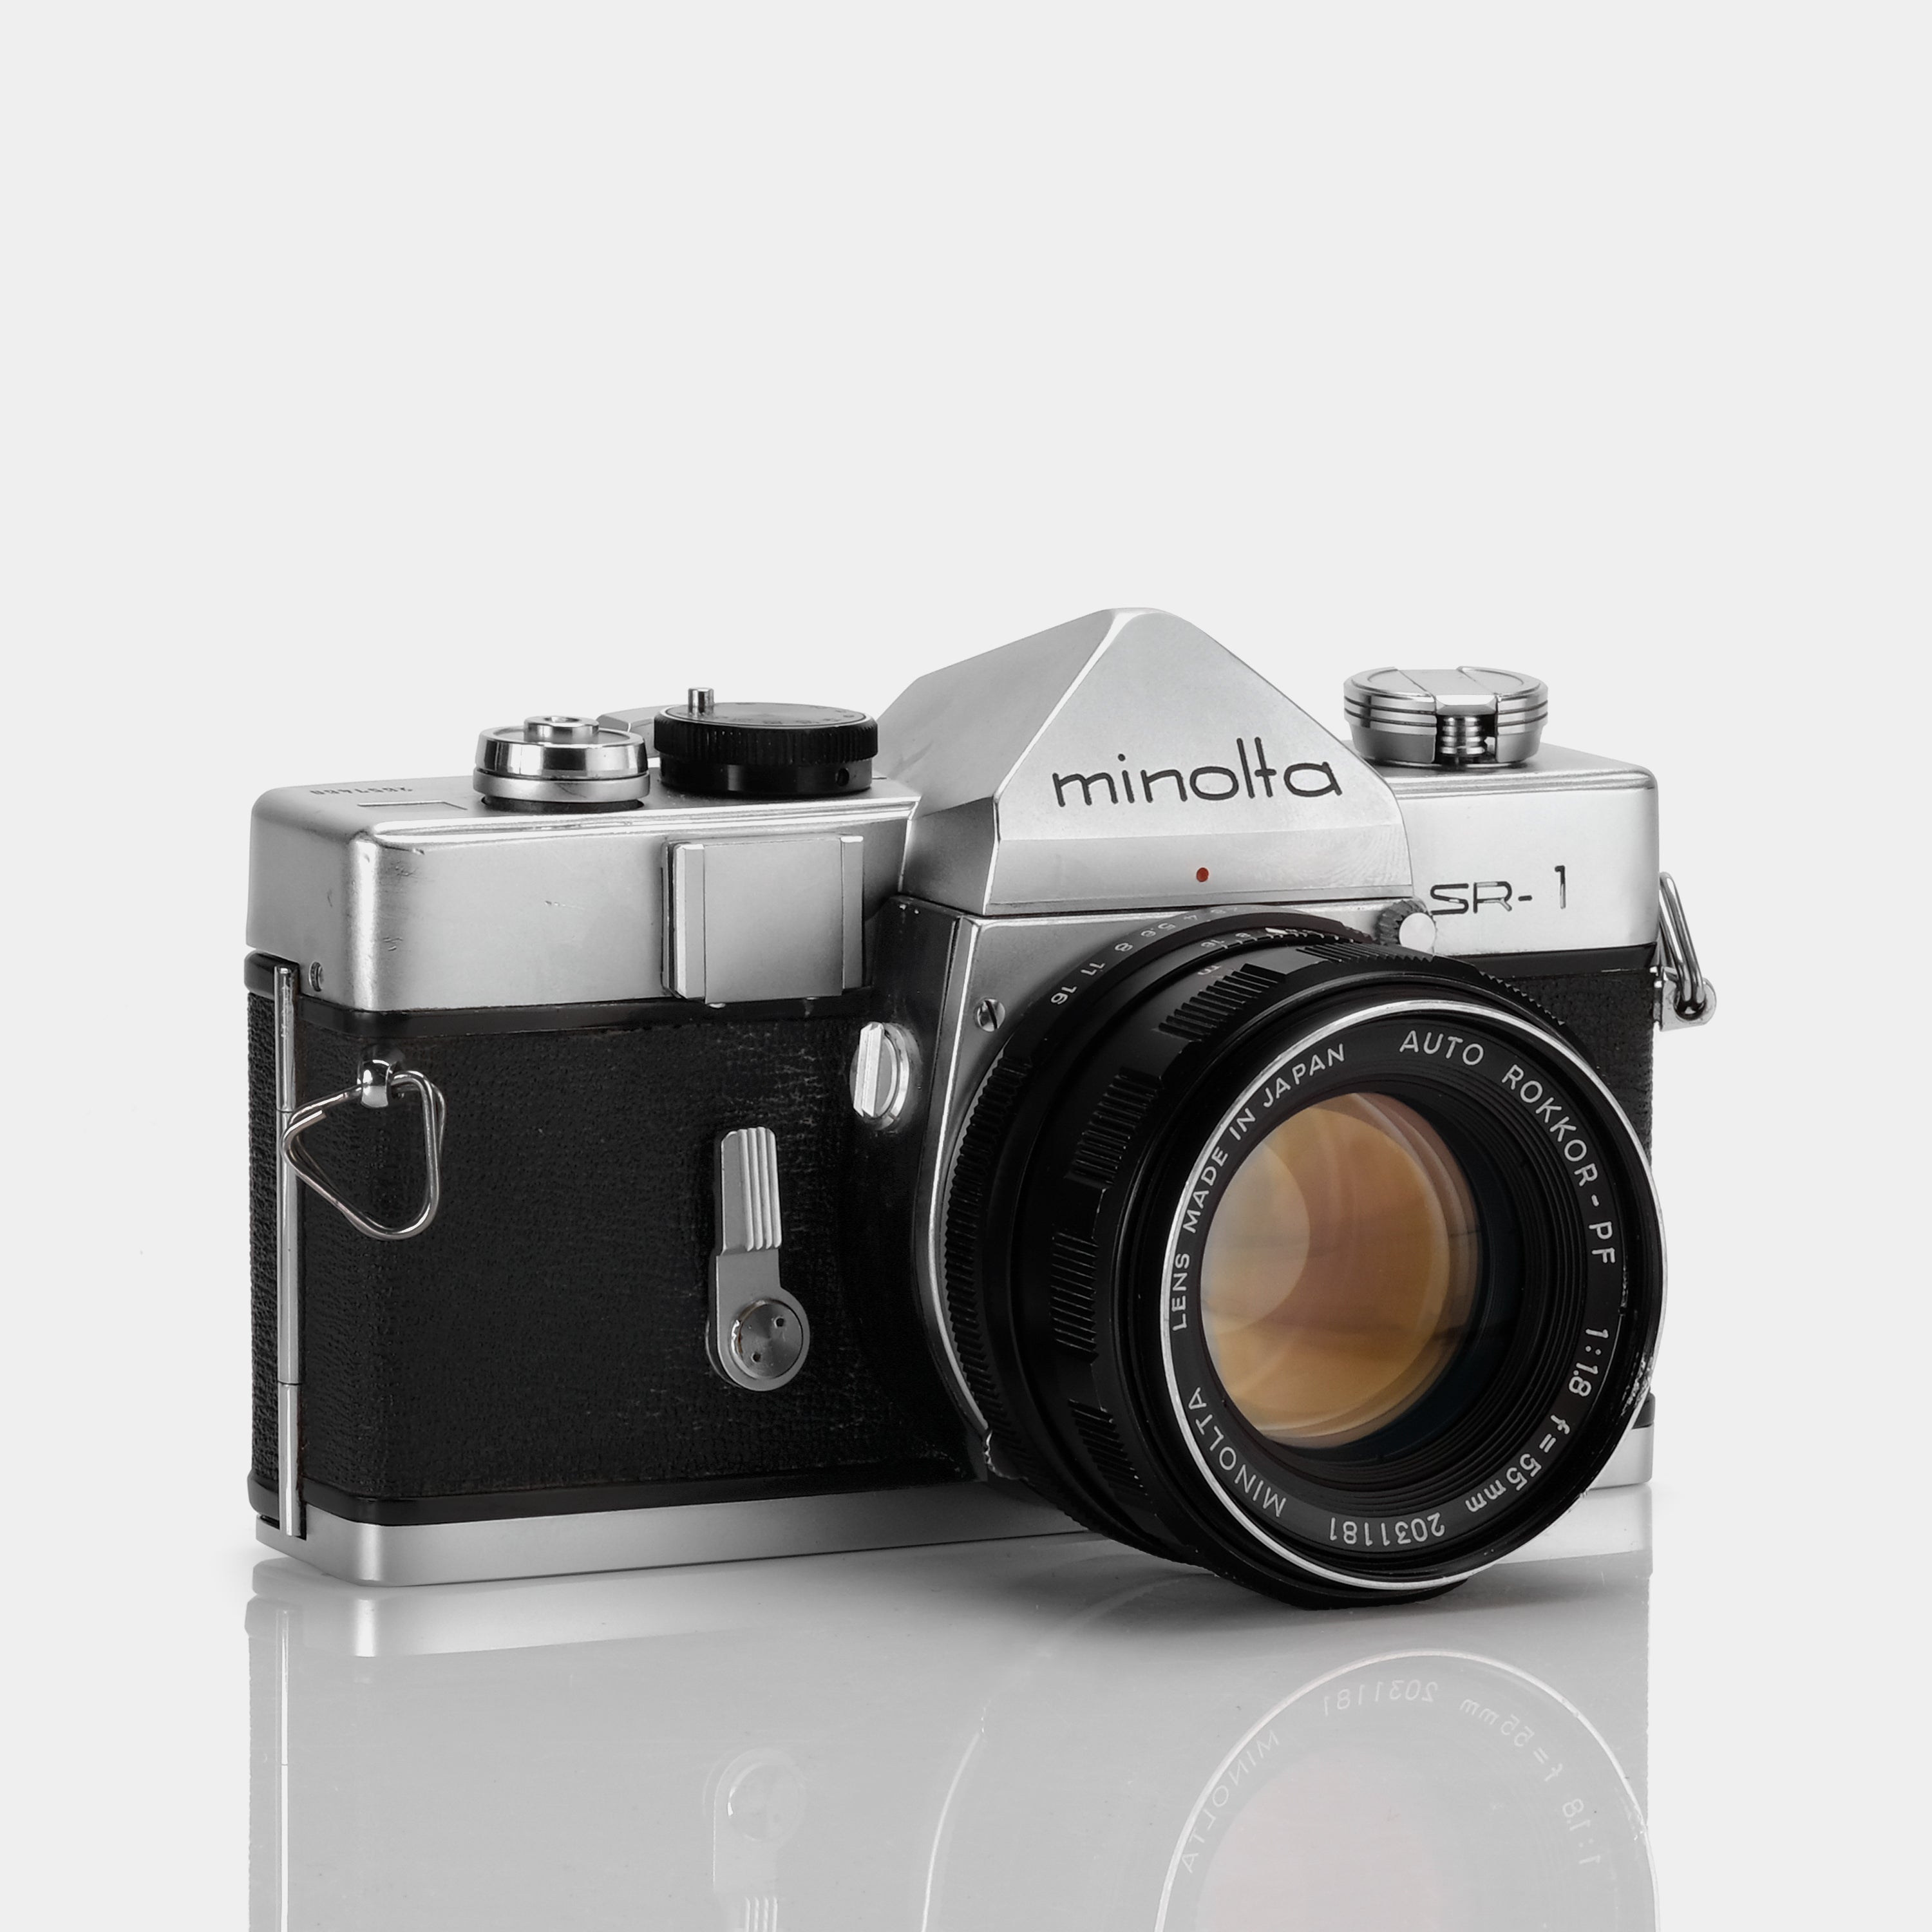 Minolta SR-1 SLR 35mm Film Camera with 55mm 1:1.8 Auto Rokkor 